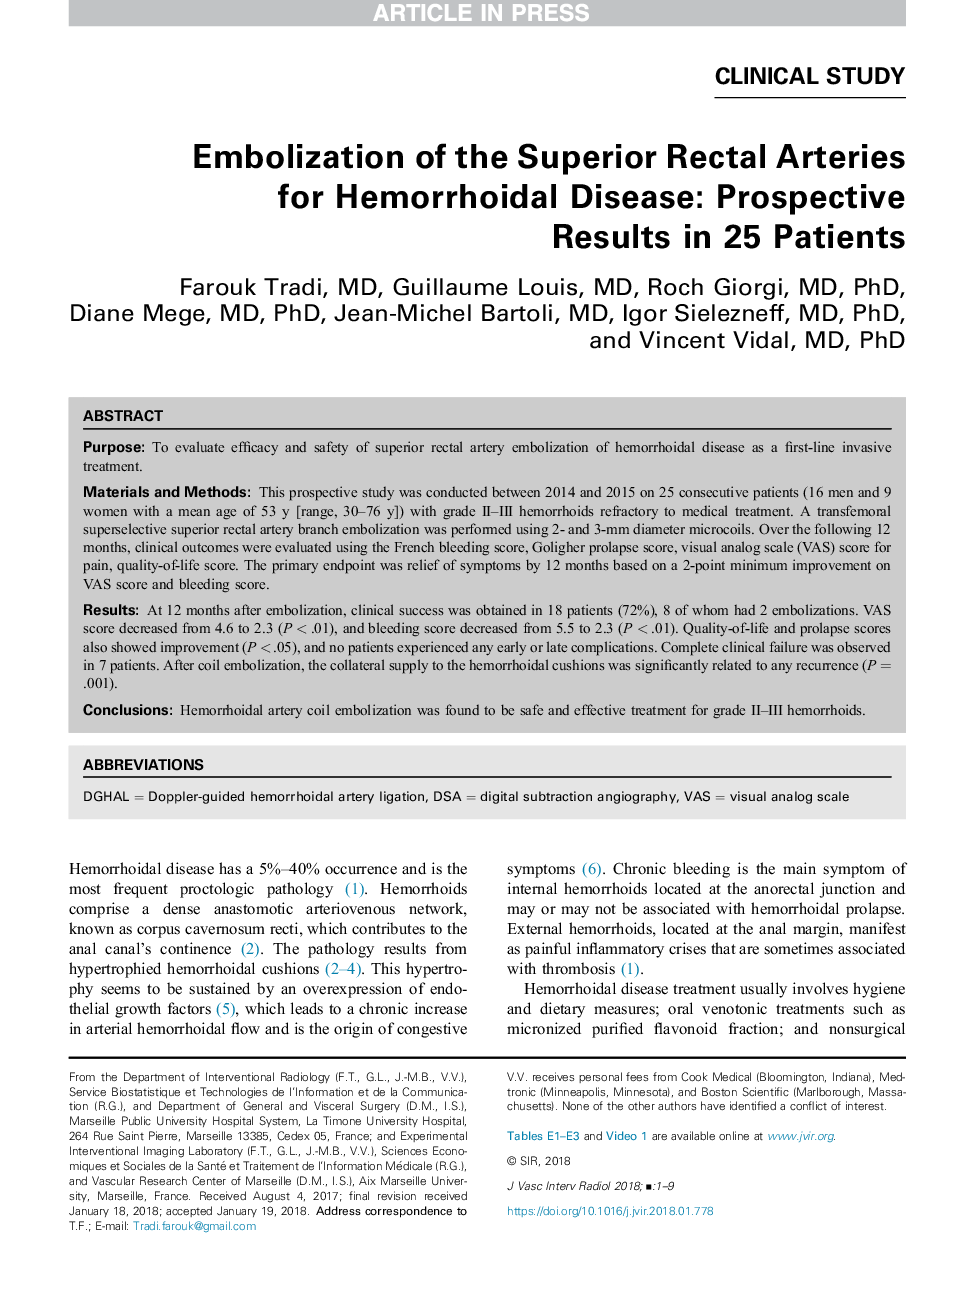 امولسیون عروق رکتال برتر برای بیماری هموروئیدی: نتایج احتمالی در 25 بیمار 